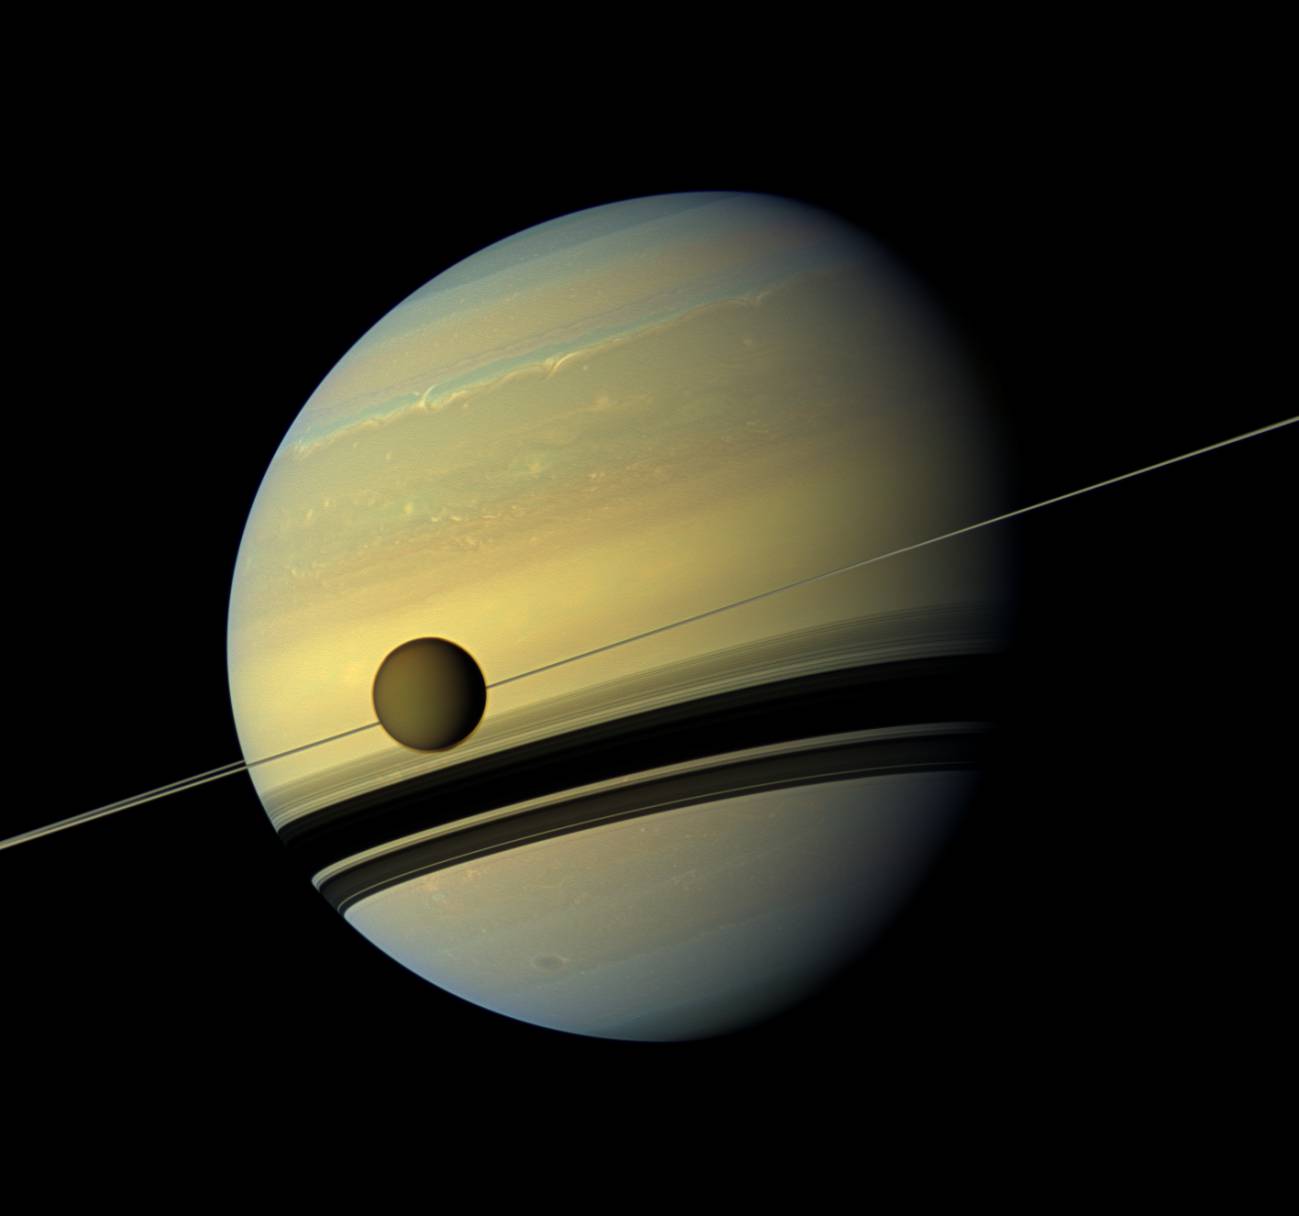 Titán pasando por delante del gigante gaseoso Saturno. Imagen: NASA